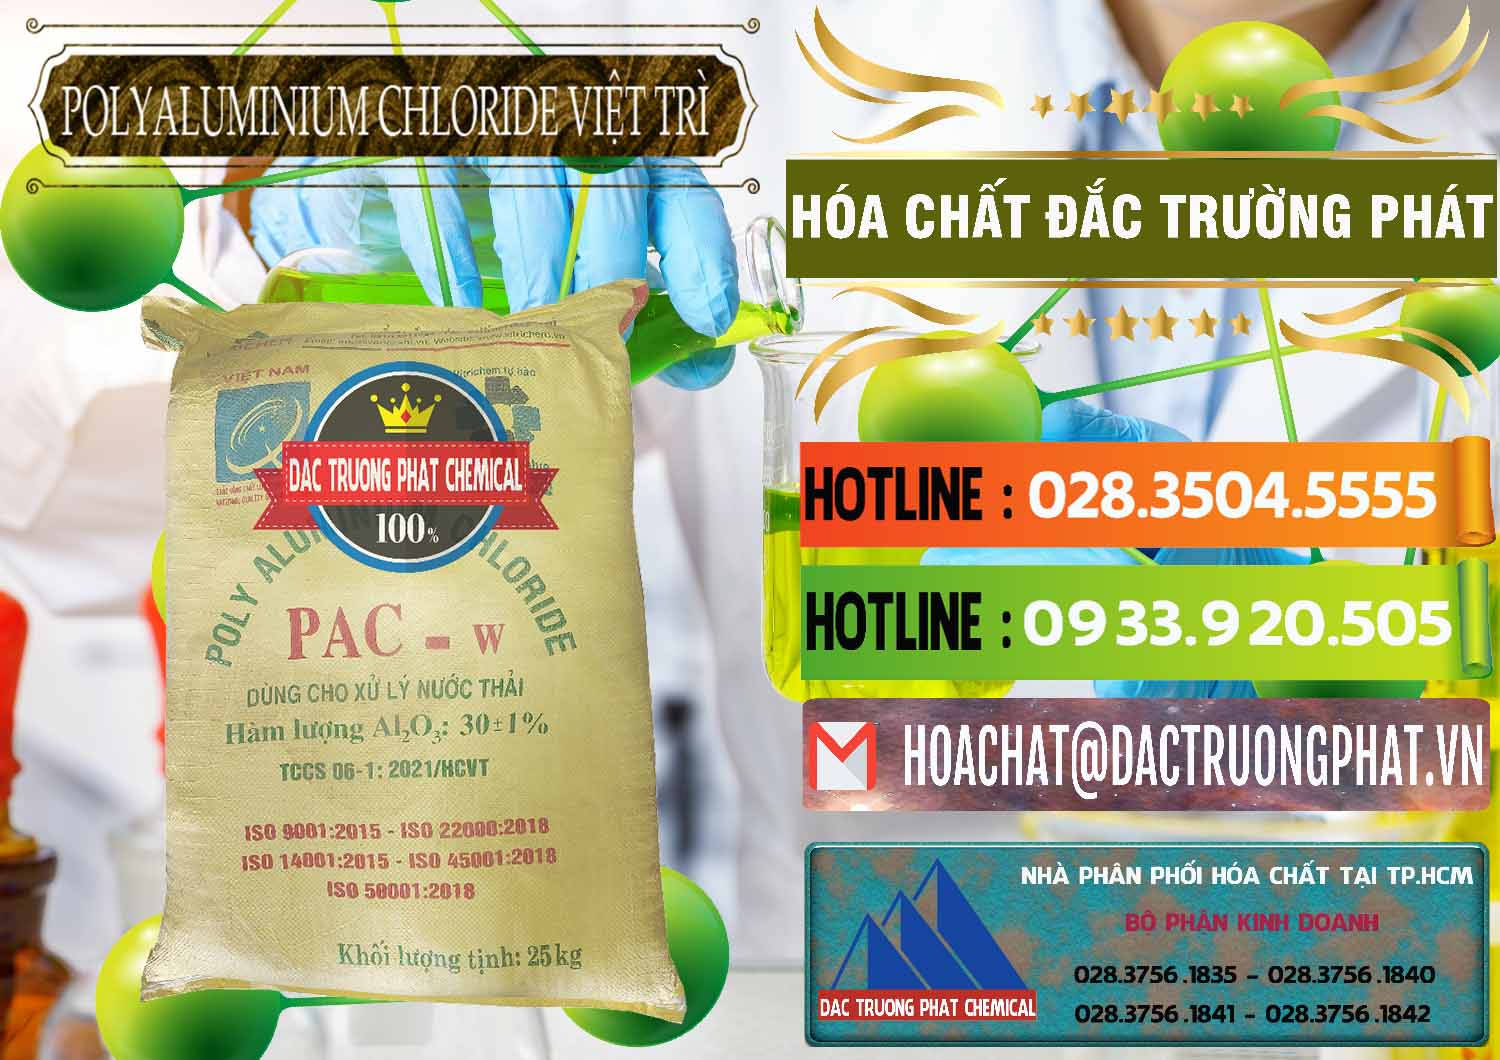 Công ty bán & cung ứng PAC - Polyaluminium Chloride Việt Trì Việt Nam - 0487 - Cty chuyên cung cấp & kinh doanh hóa chất tại TP.HCM - cungcaphoachat.com.vn